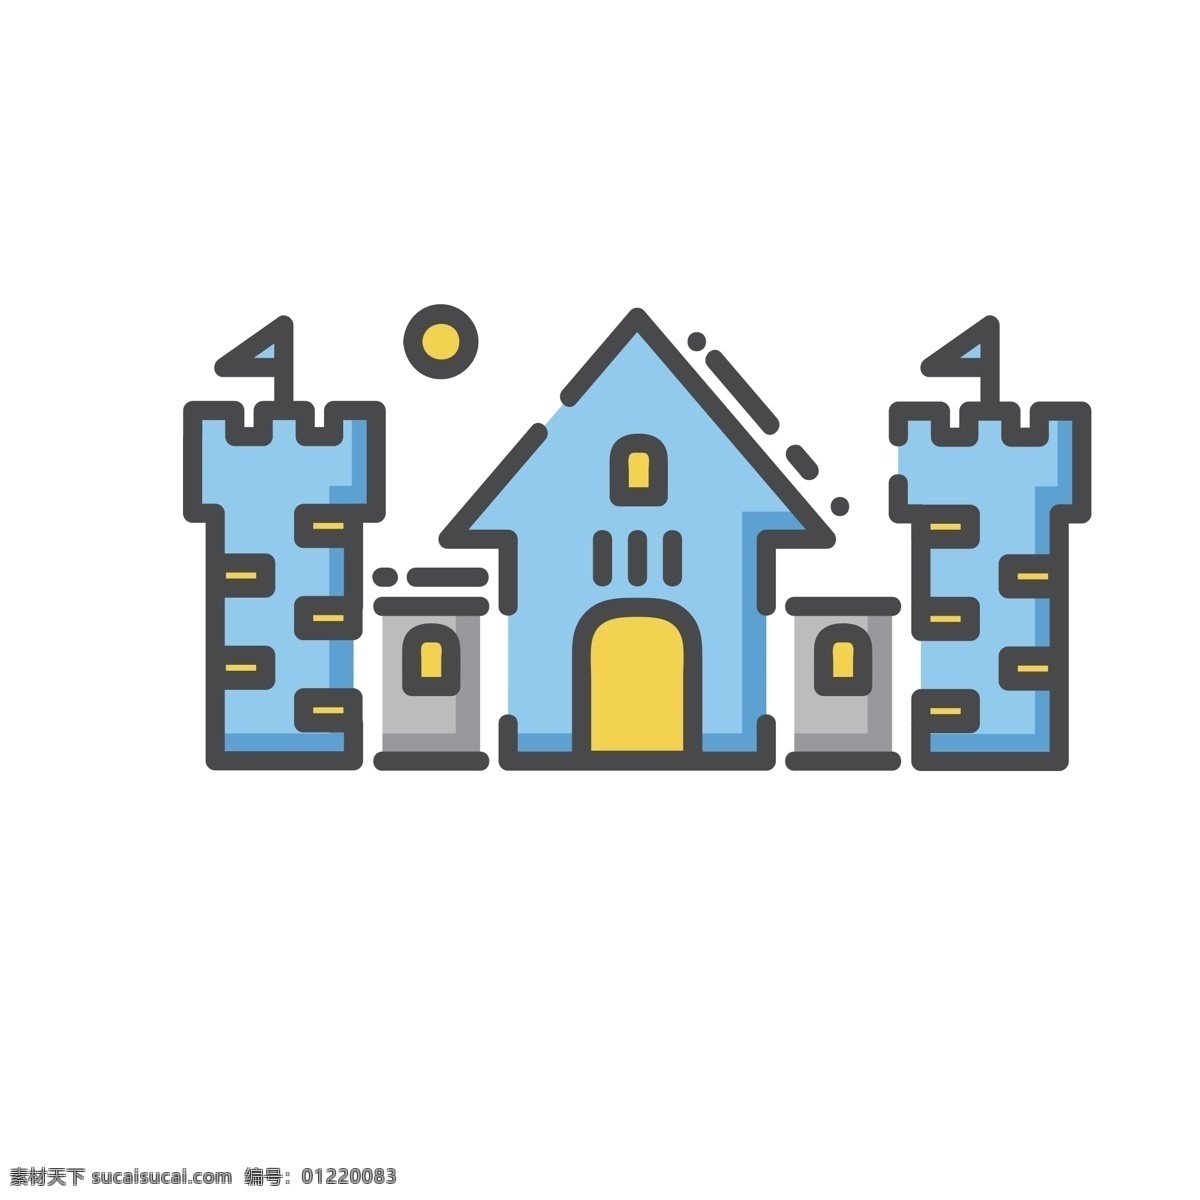 卡通城堡 古堡 城堡 扁平化ui ui图标 手机图标 界面ui 网页ui h5图标